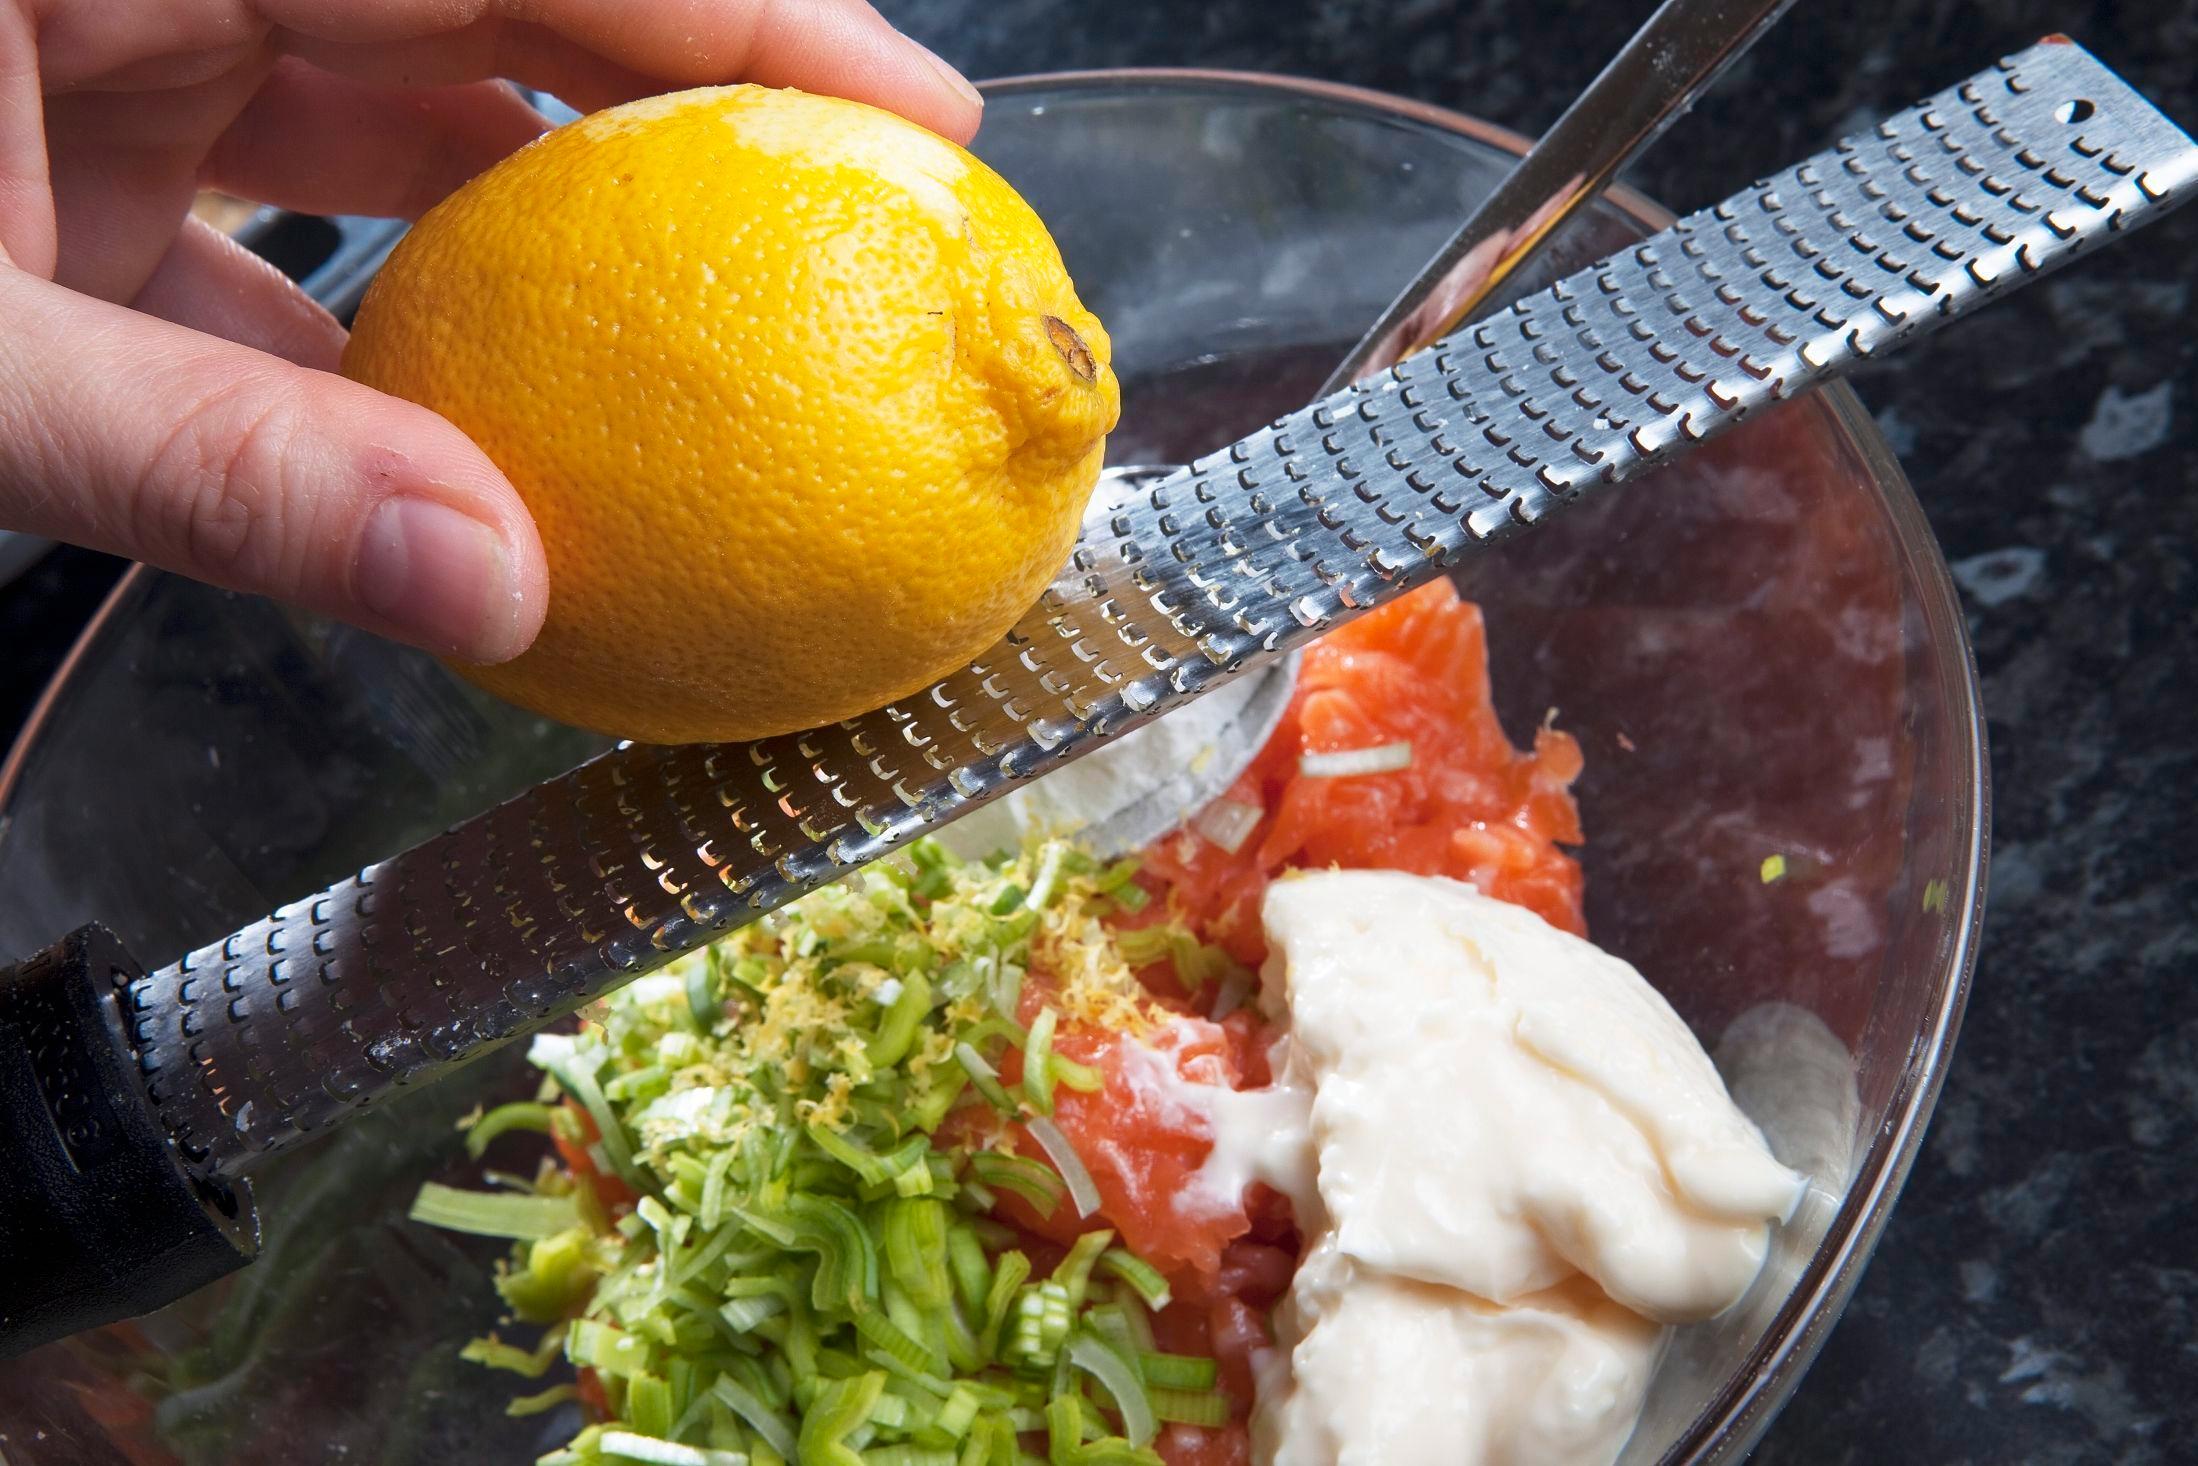 BRUK HELE: Både saften og skallet fra sitron kan brukes i matlaging og desserter. Foto: Magnar Kirknes/VG